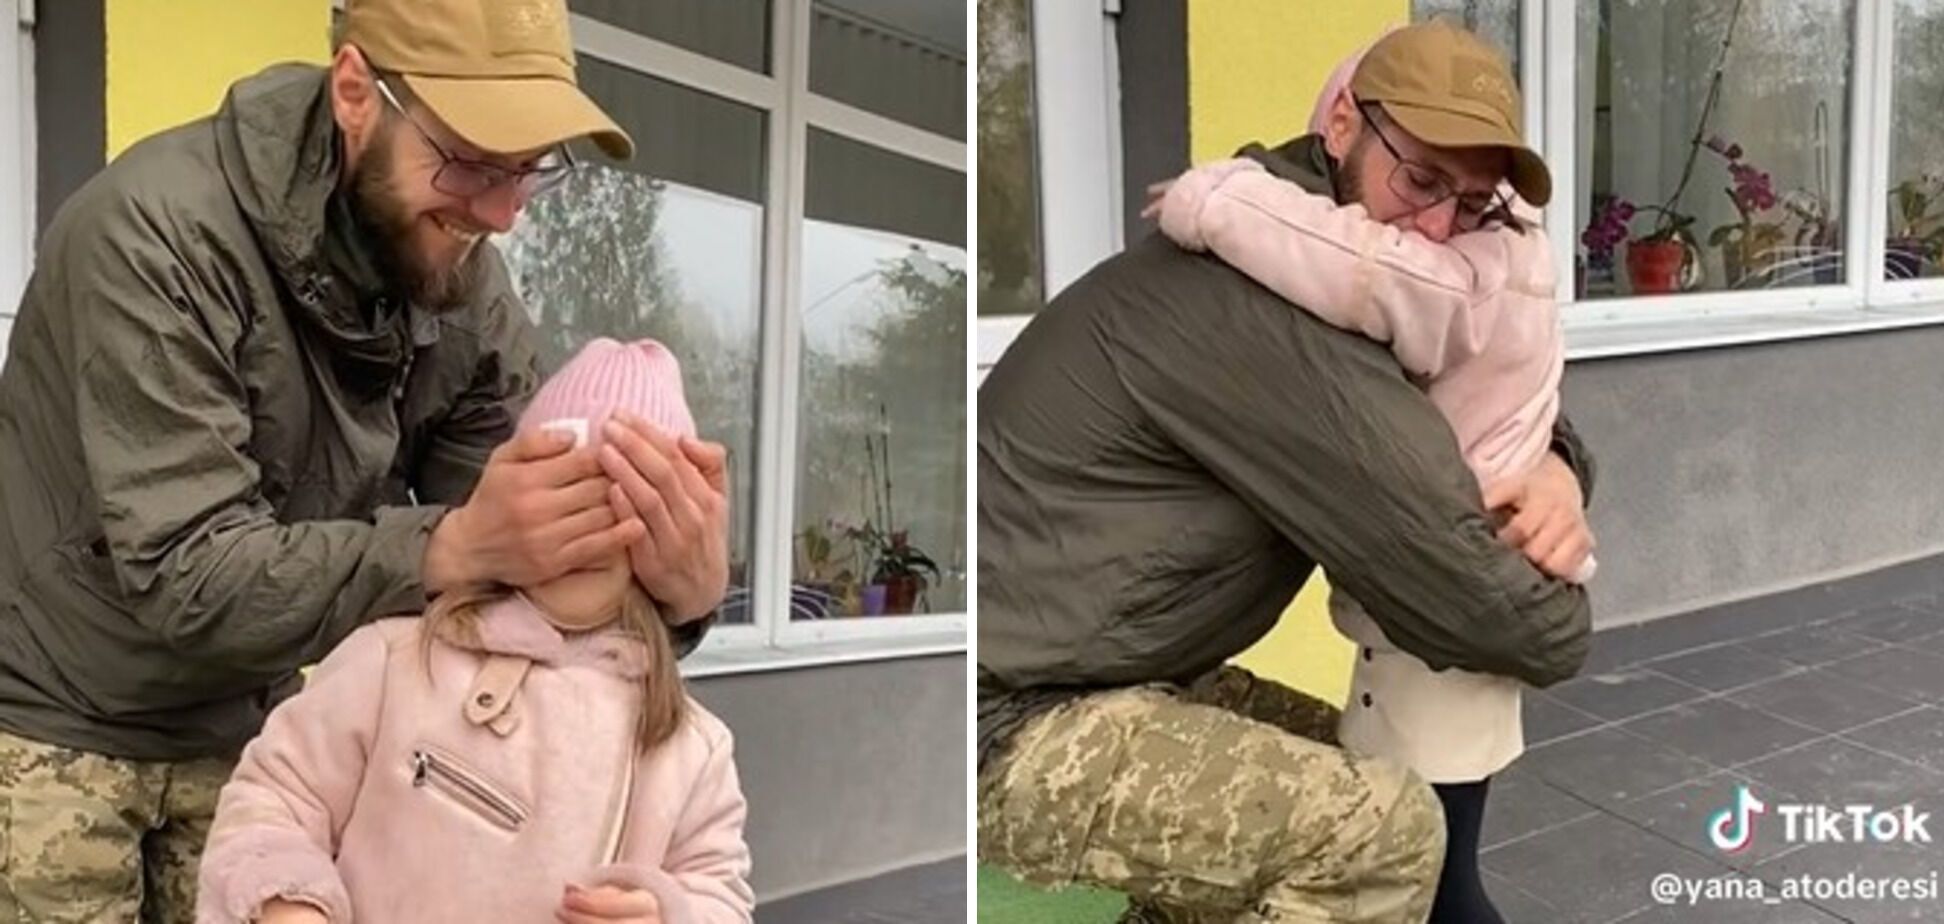 "Вісім місяців розлуки": мережу зворушили кадри зустрічі онуки з дідусем-військовим. Відео